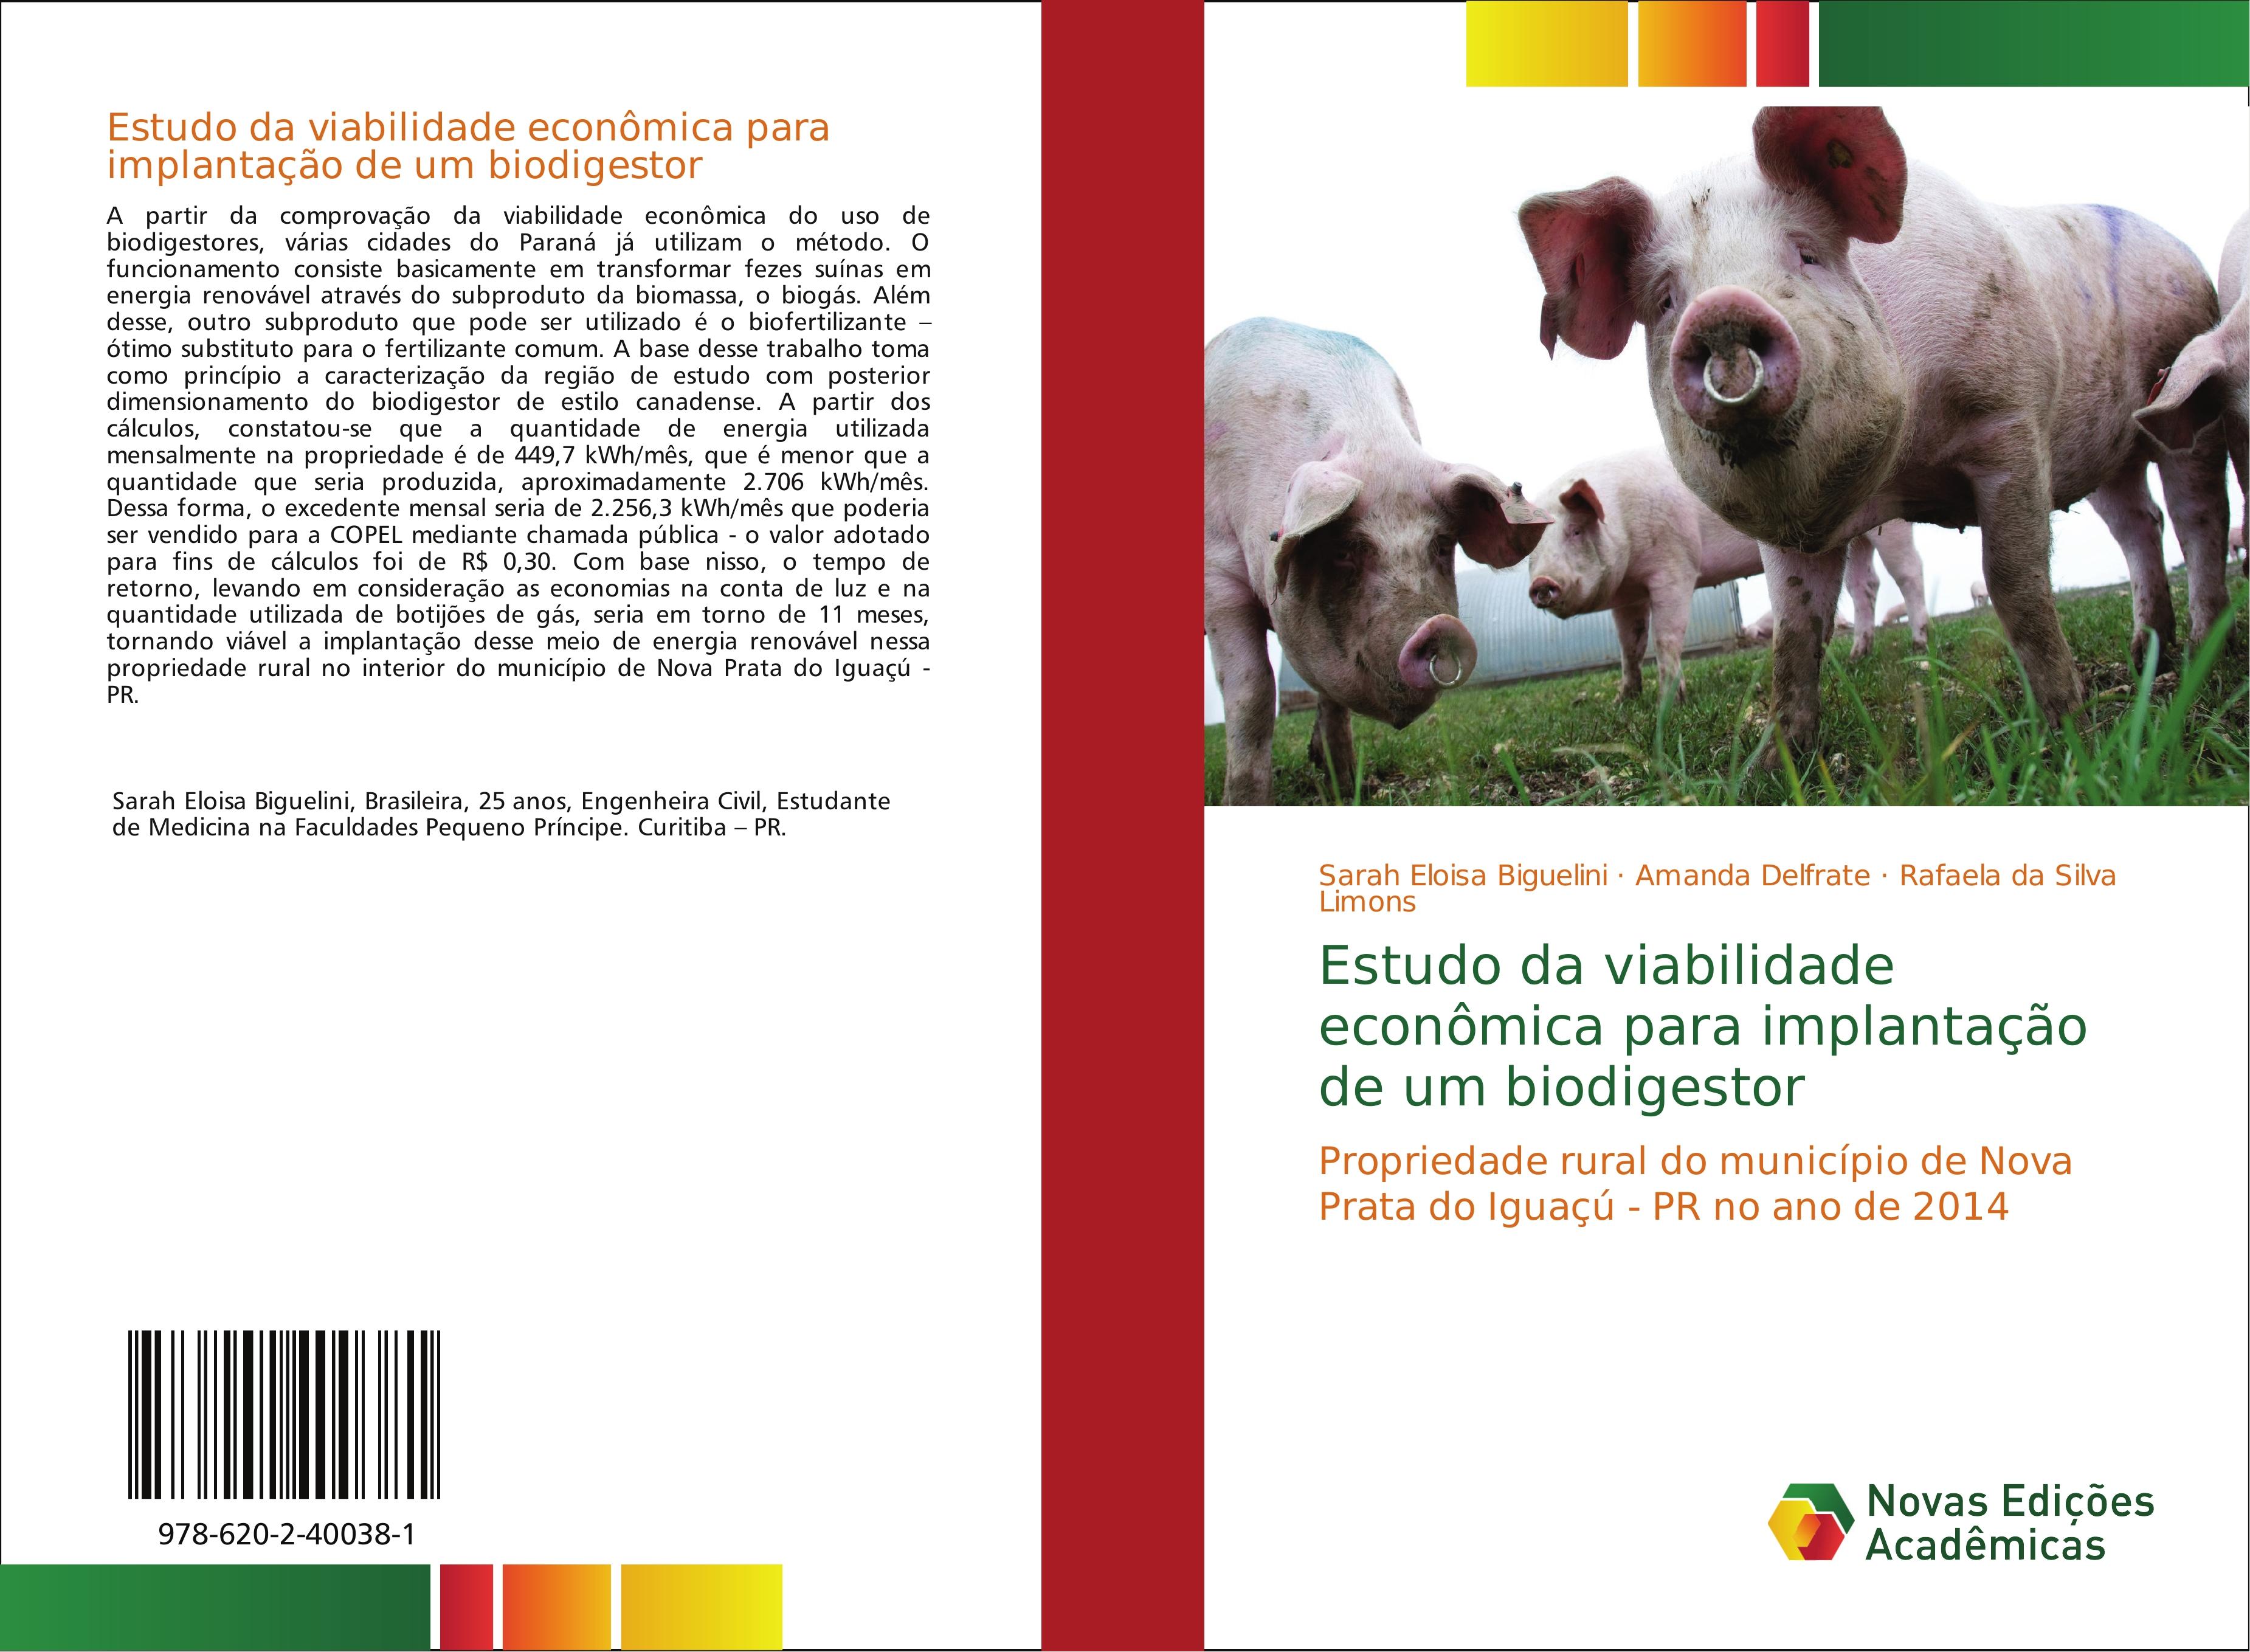 Estudo da viabilidade econômica para implantação de um biodigestor / Propriedade rural do município de Nova Prata do Iguaçú - PR no ano de 2014 / Sarah Eloisa Biguelini (u. a.) / Taschenbuch / 2018 - Biguelini, Sarah Eloisa